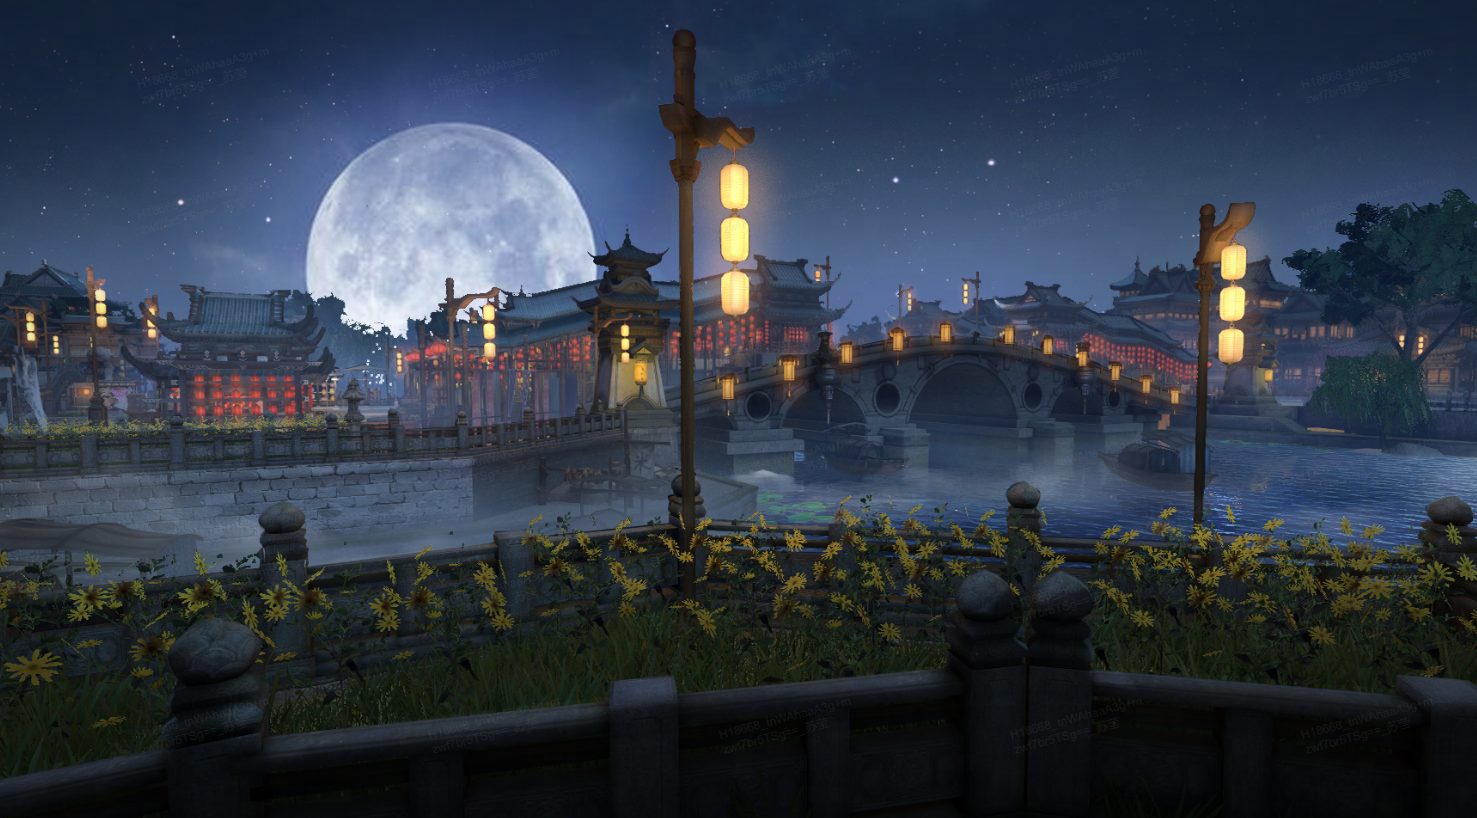 这是一幅东亚风格的夜景图，包含一座石桥、古建筑、明亮的月亮和前景的栏杆与花朵。